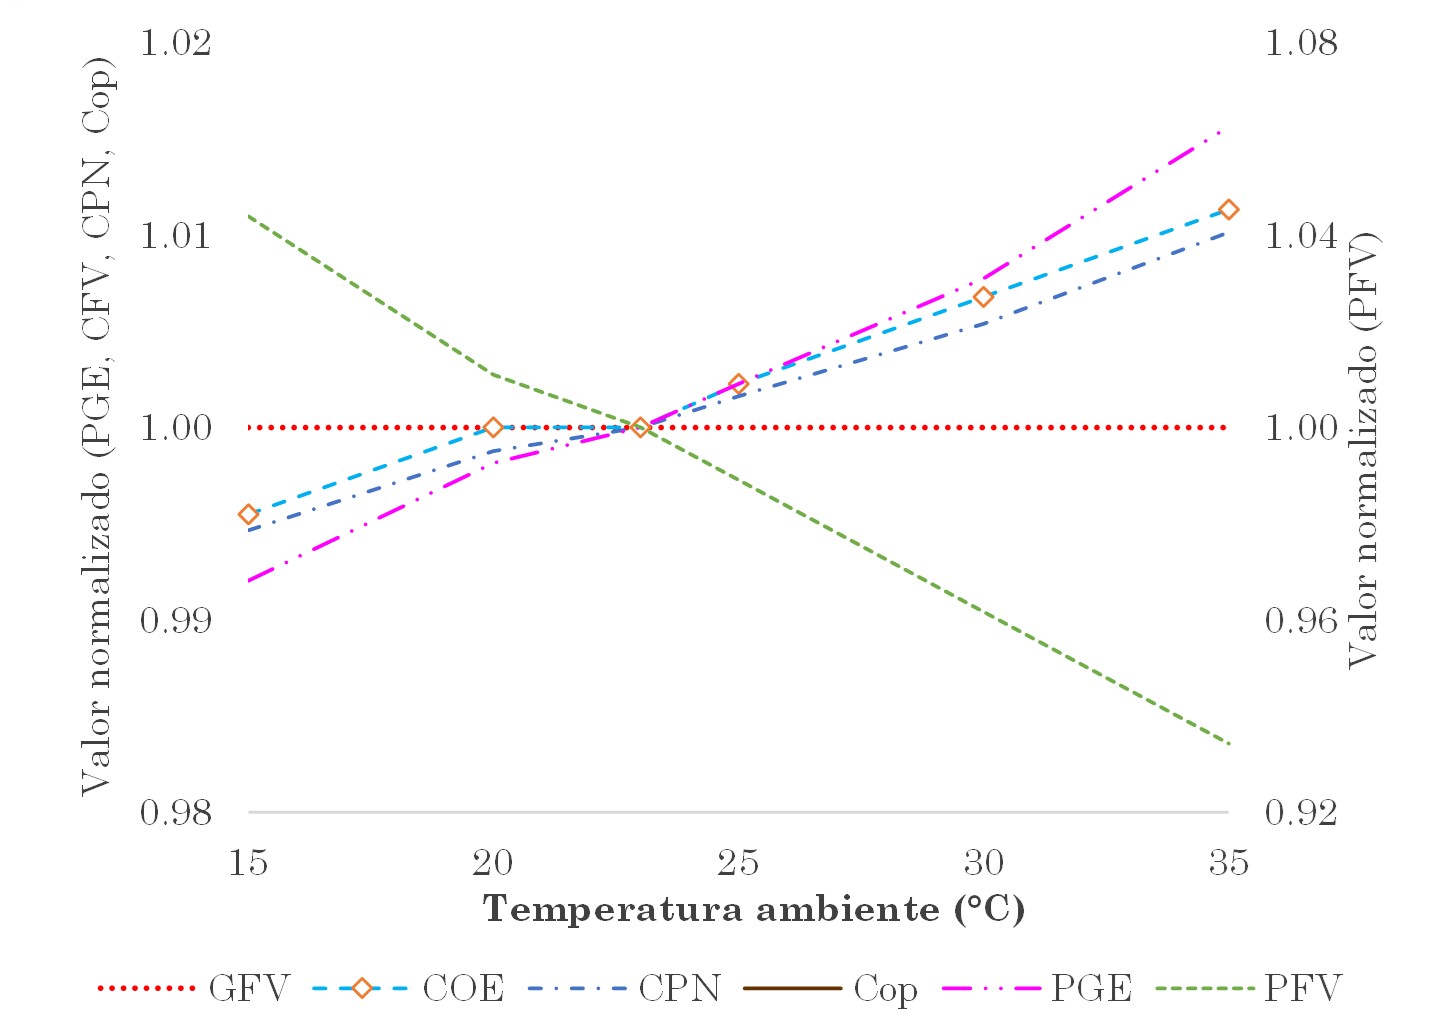 Resultados con capacidad del generador FV fija y variación de la temperatura